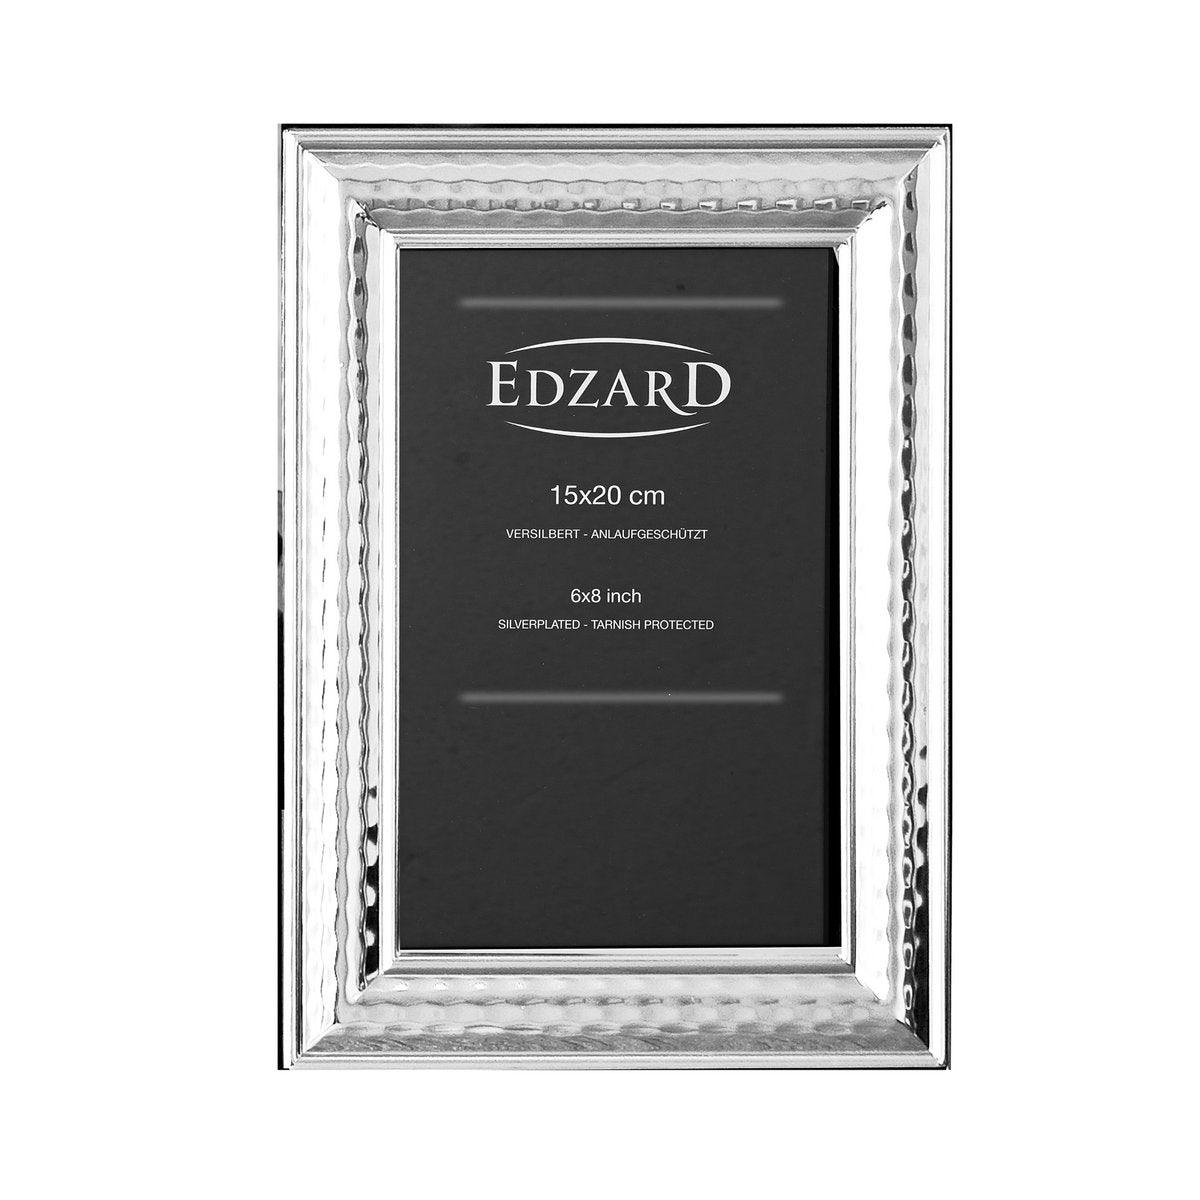 EDZARD Fotorahmen Urbino für Foto 15 x 20 cm, edel versilbert, anlaufgeschützt, mit 2 Aufhängern - HomeDesign Knaus